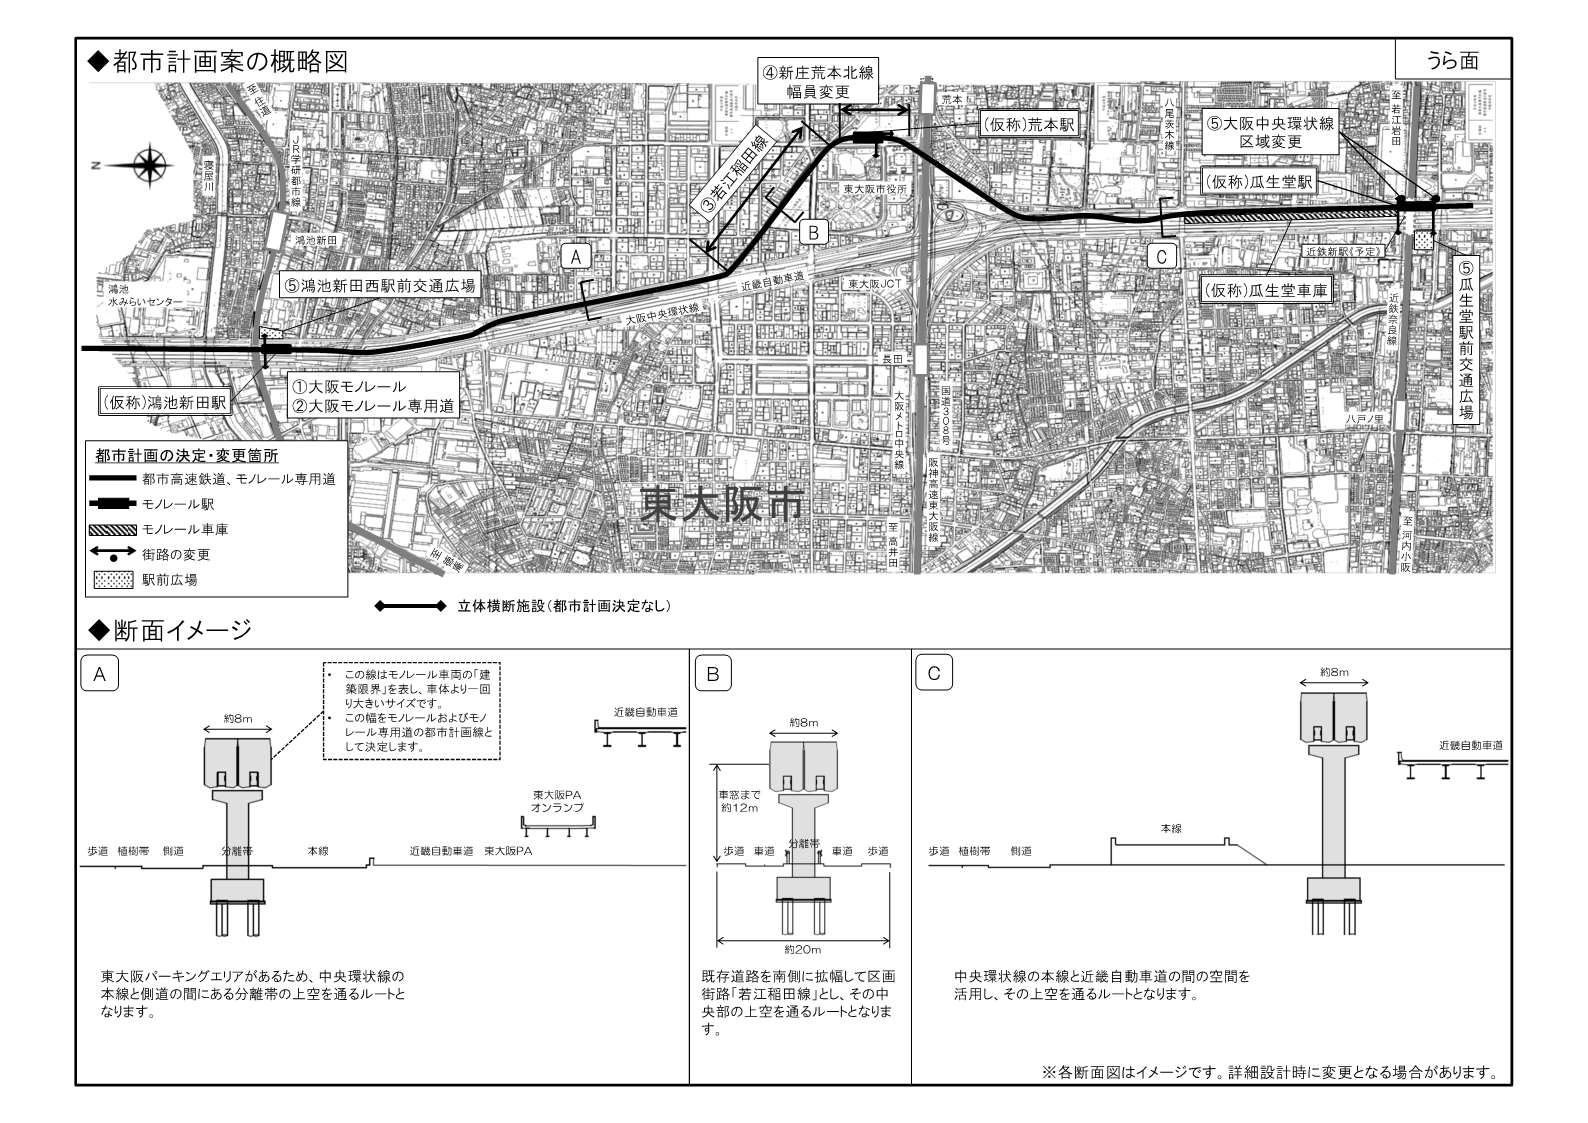 大阪モノレールの延伸に関する都市計画の変更についての東大阪市域のリーフレットの裏面です。